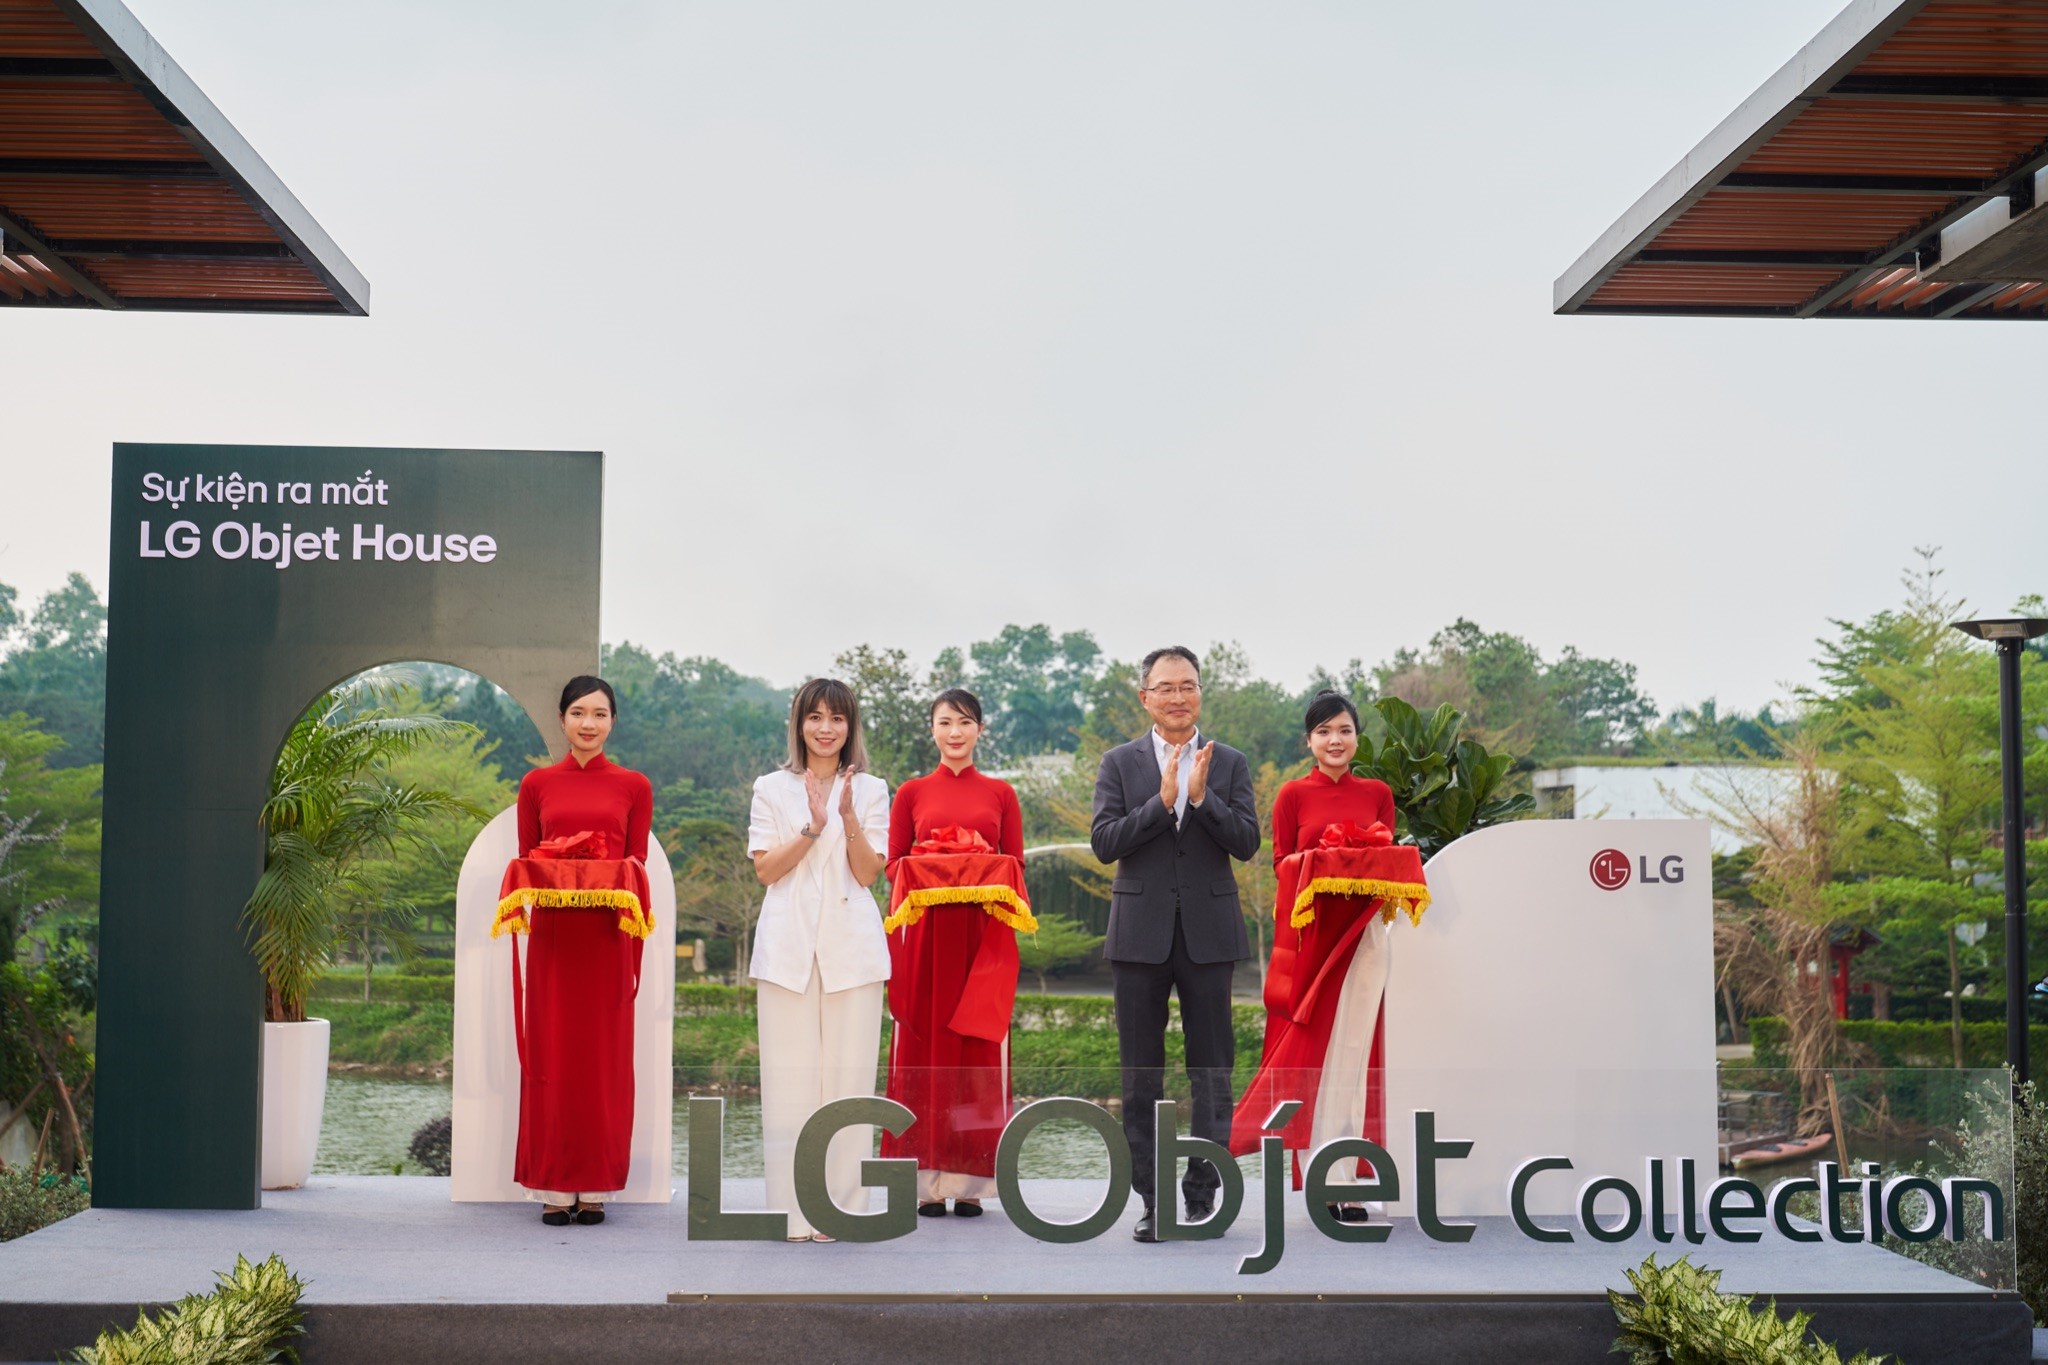 Khám phá ‘LG Objet House’ - Không gian nghỉ dưỡng kết hợp trải nghiệm sản phẩm từ LG - Ảnh 2.